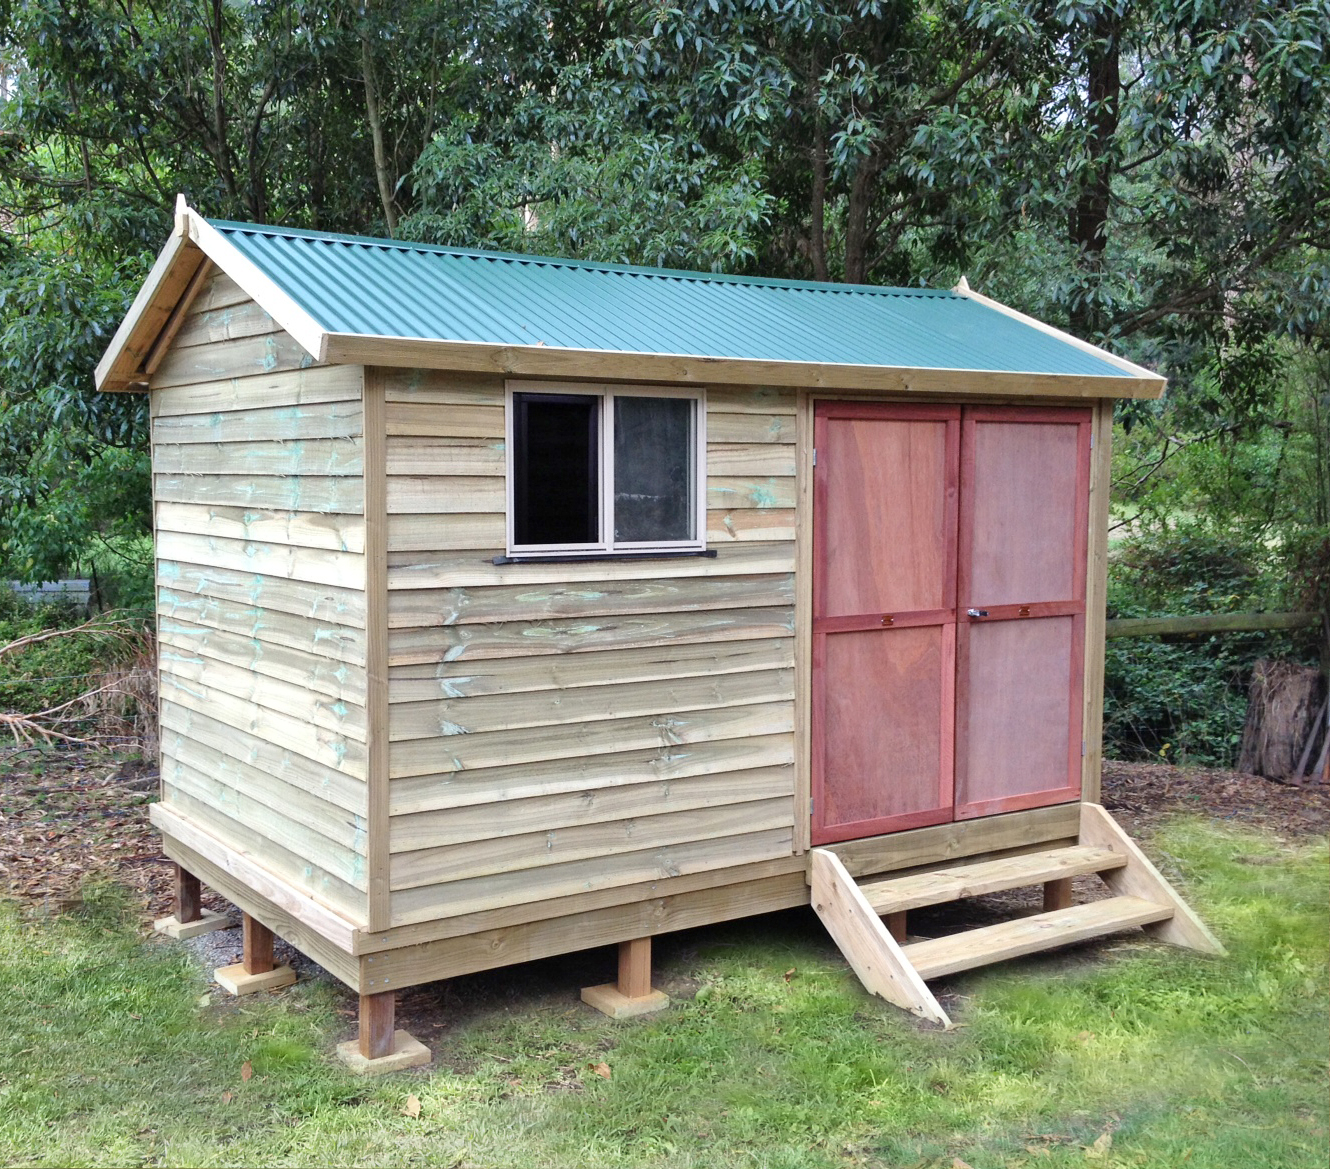 Used garden sheds sydney,cheap storage sheds sunshine coast,yard tool ...